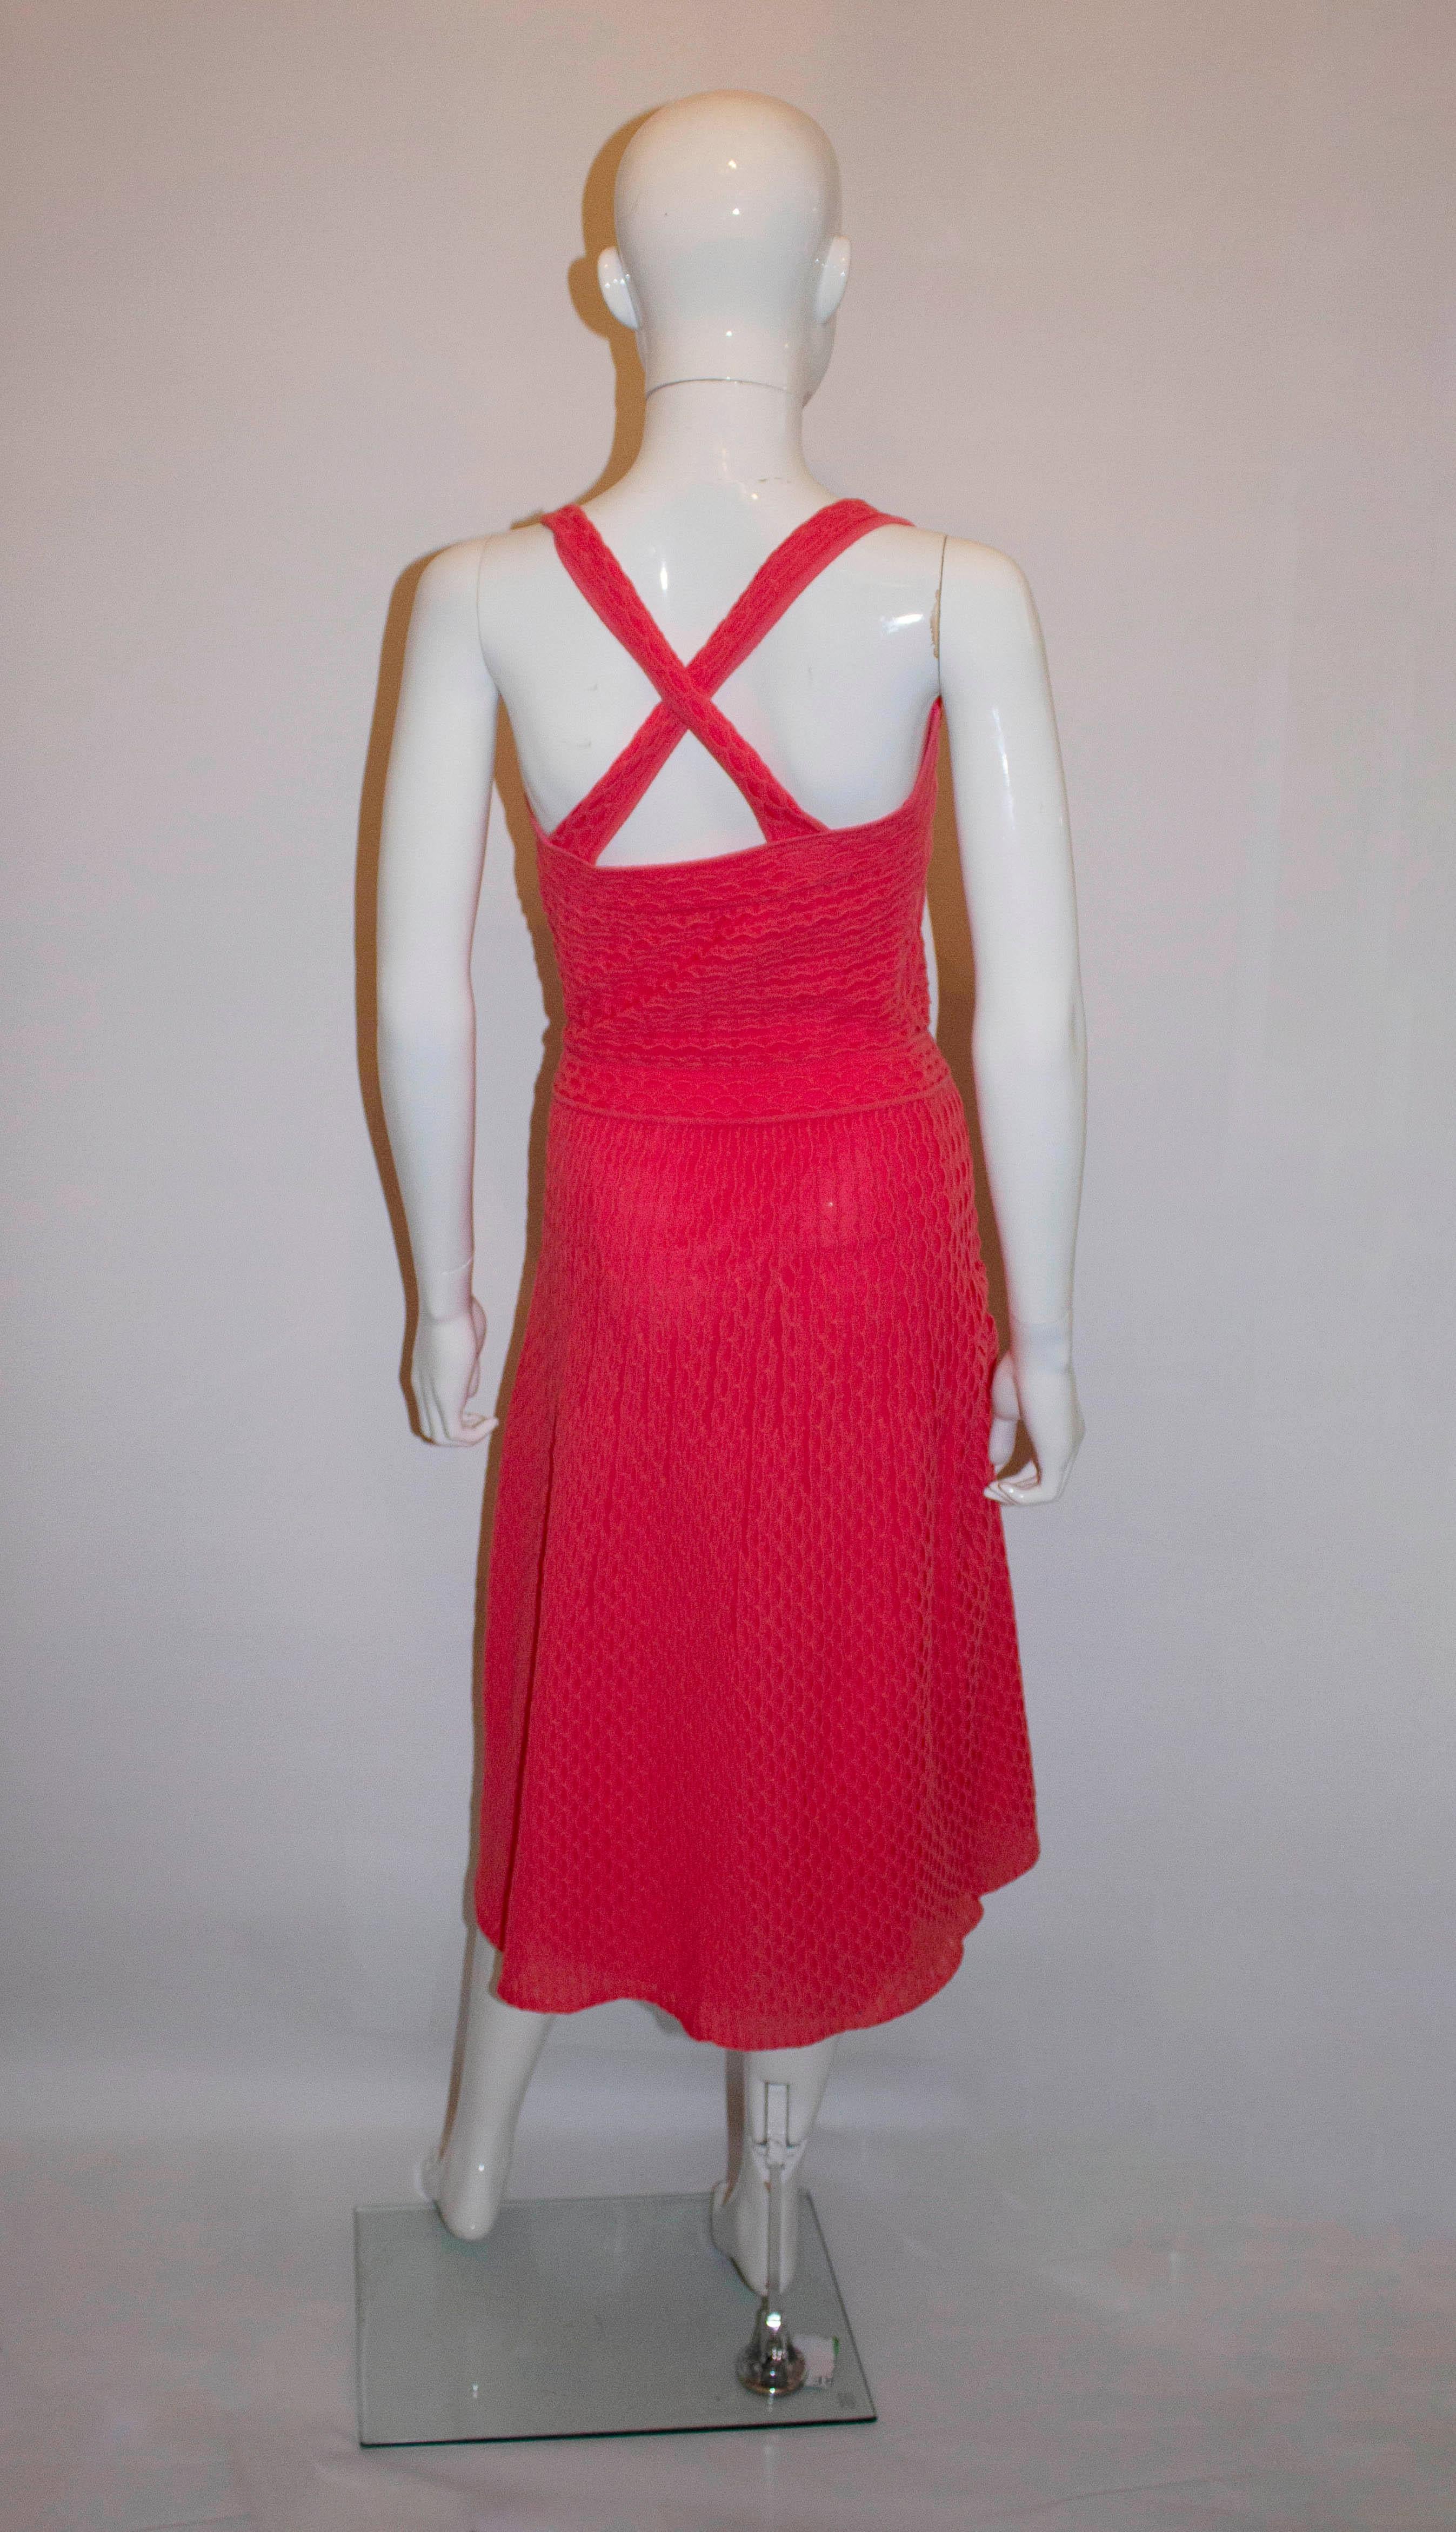 Ein hübsches Sommerkleid von MIssoni, Label M. Das Kleid ist in einer hübschen rosa/roten Farbe mit überkreuzten Trägern am Rücken und ist vollständig gefüttert. 
Größe Italienisch 42, Brustumfang 35'',  taille 27'', Länge 48''